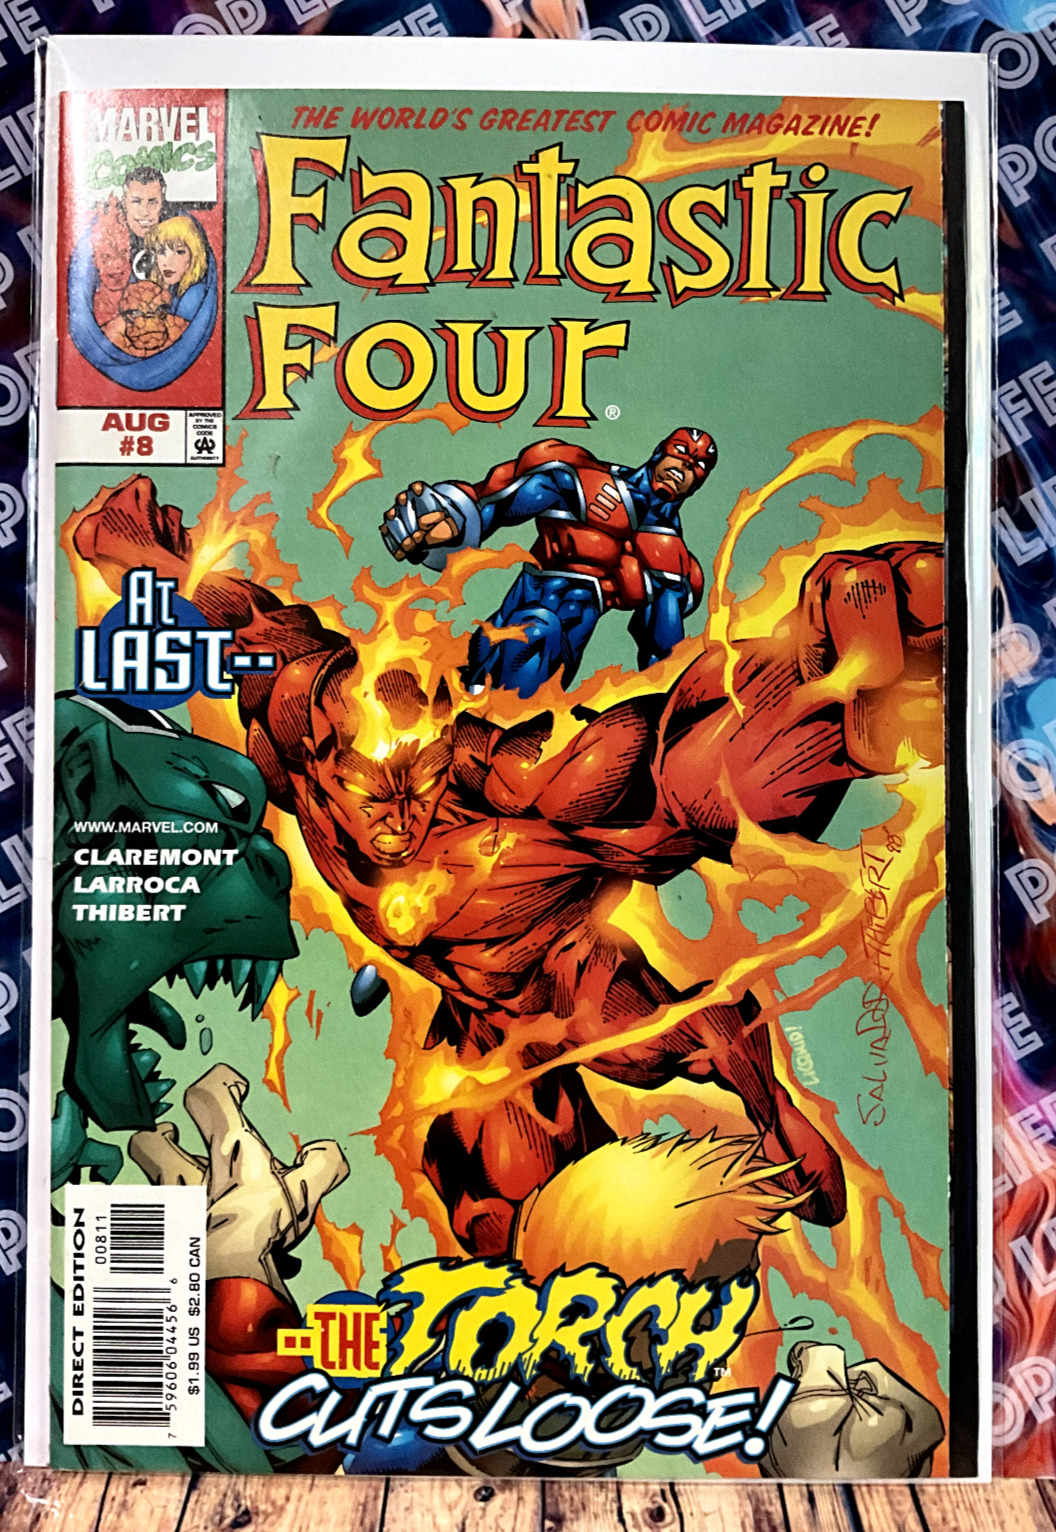 Fantastic Four #8 (Marvel Comics)